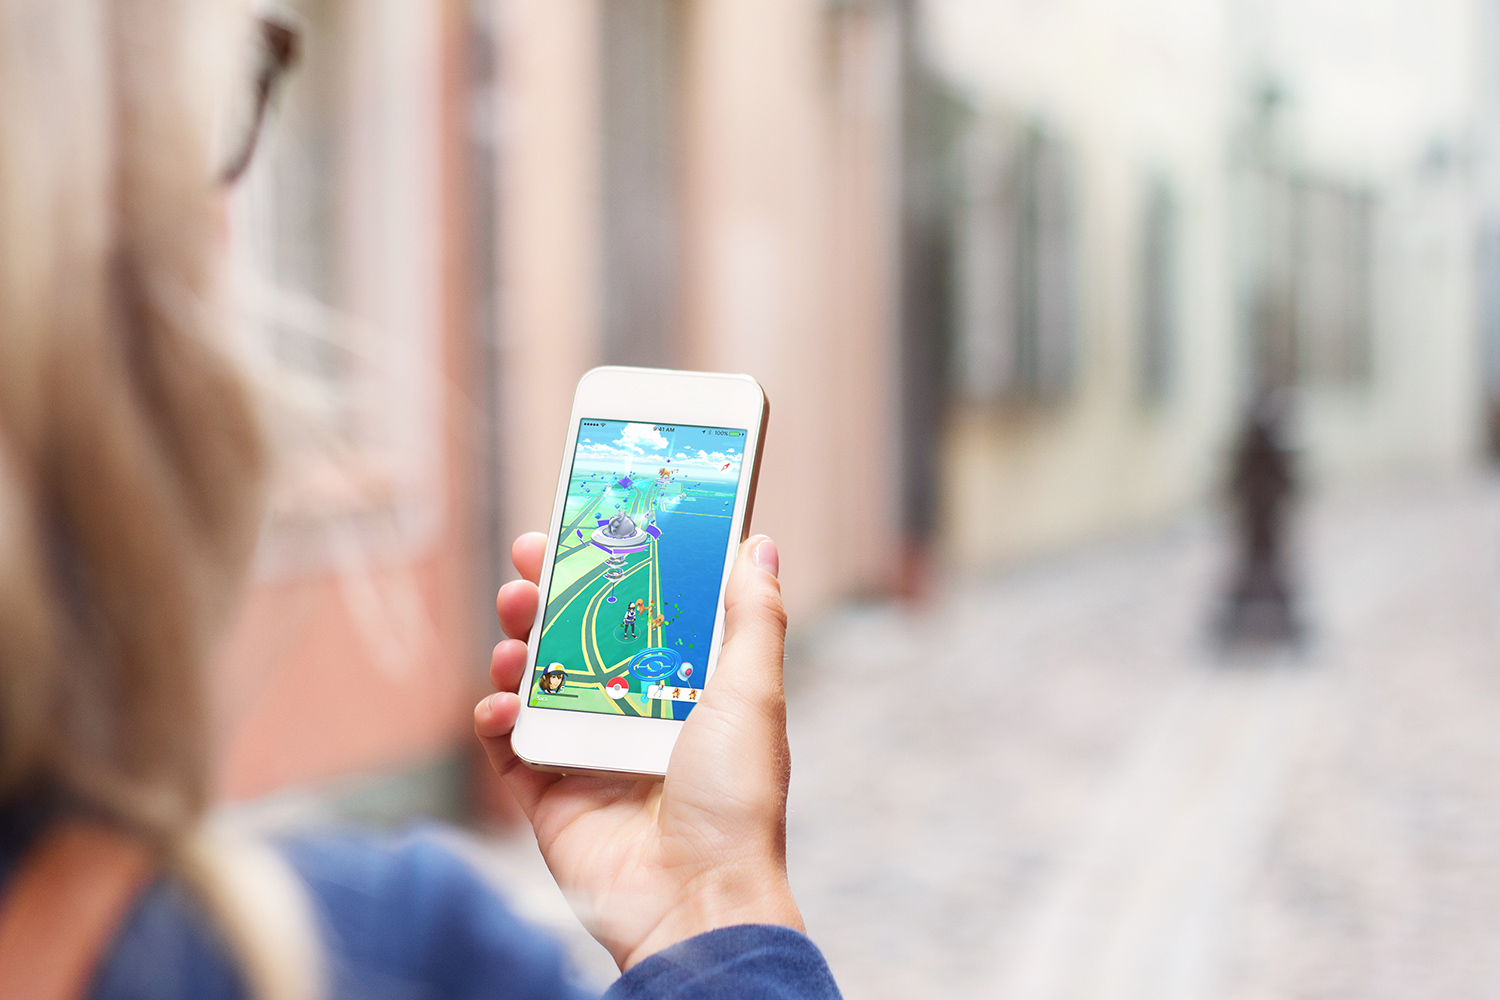 Apple confirms Pokémon Go set App Store record